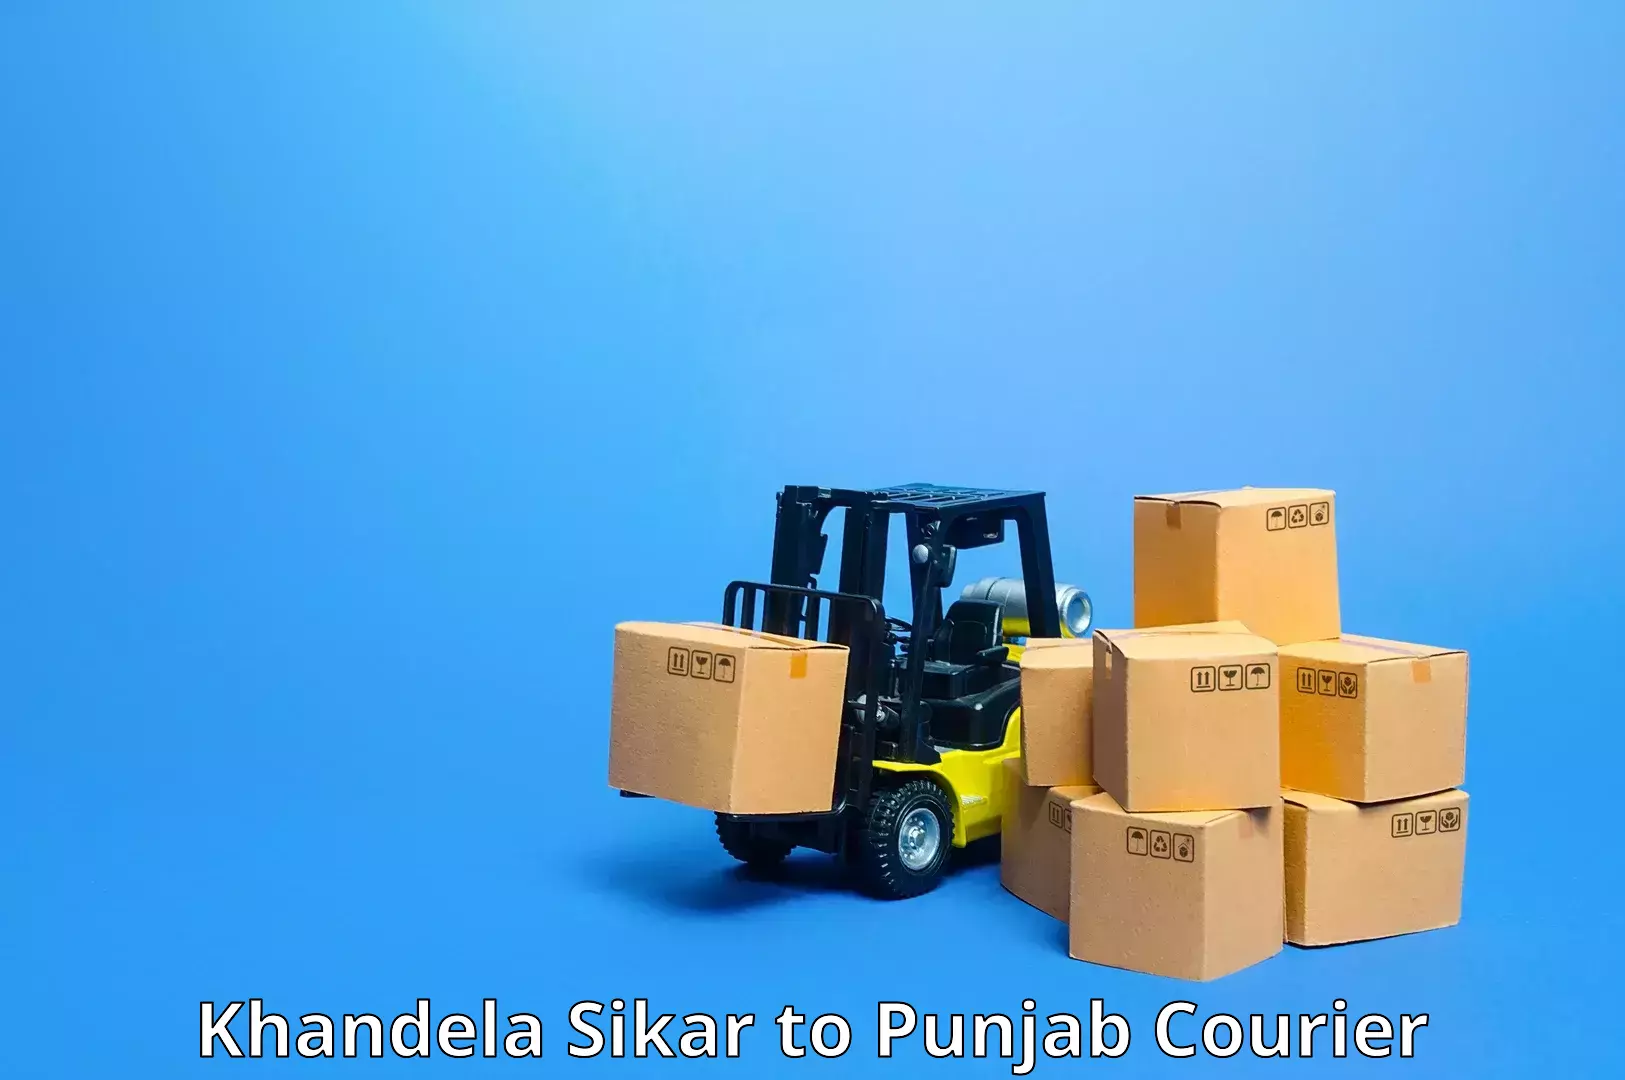 Multi-national courier services Khandela Sikar to Punjab